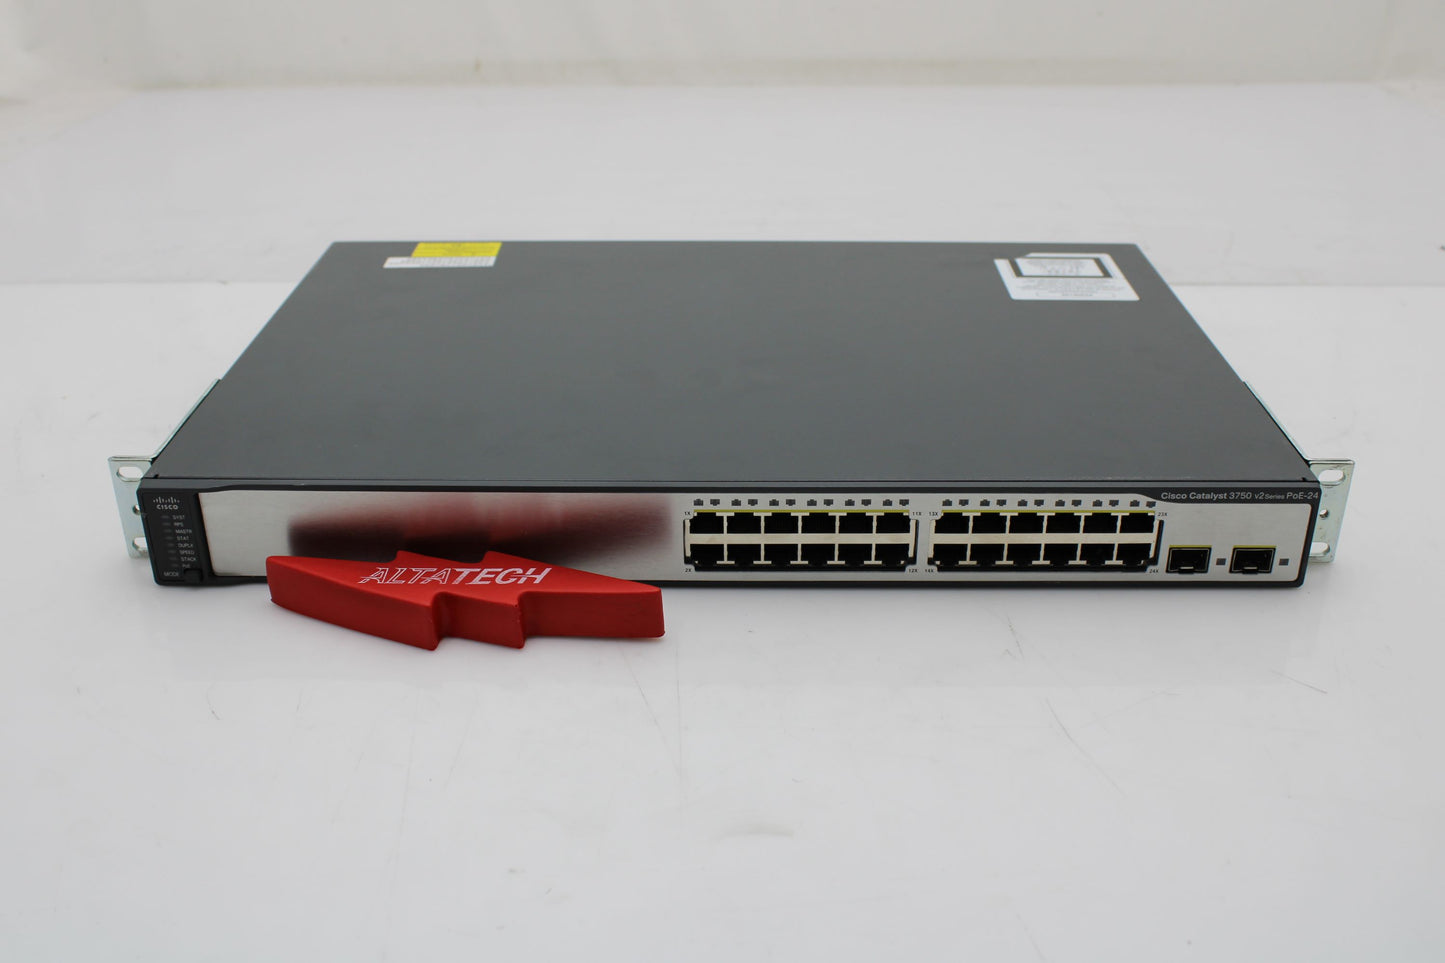 Cisco WS-C3750V2-24PS-S WS-C3750V2-24PS-S Cisco 3750 Switch, Used